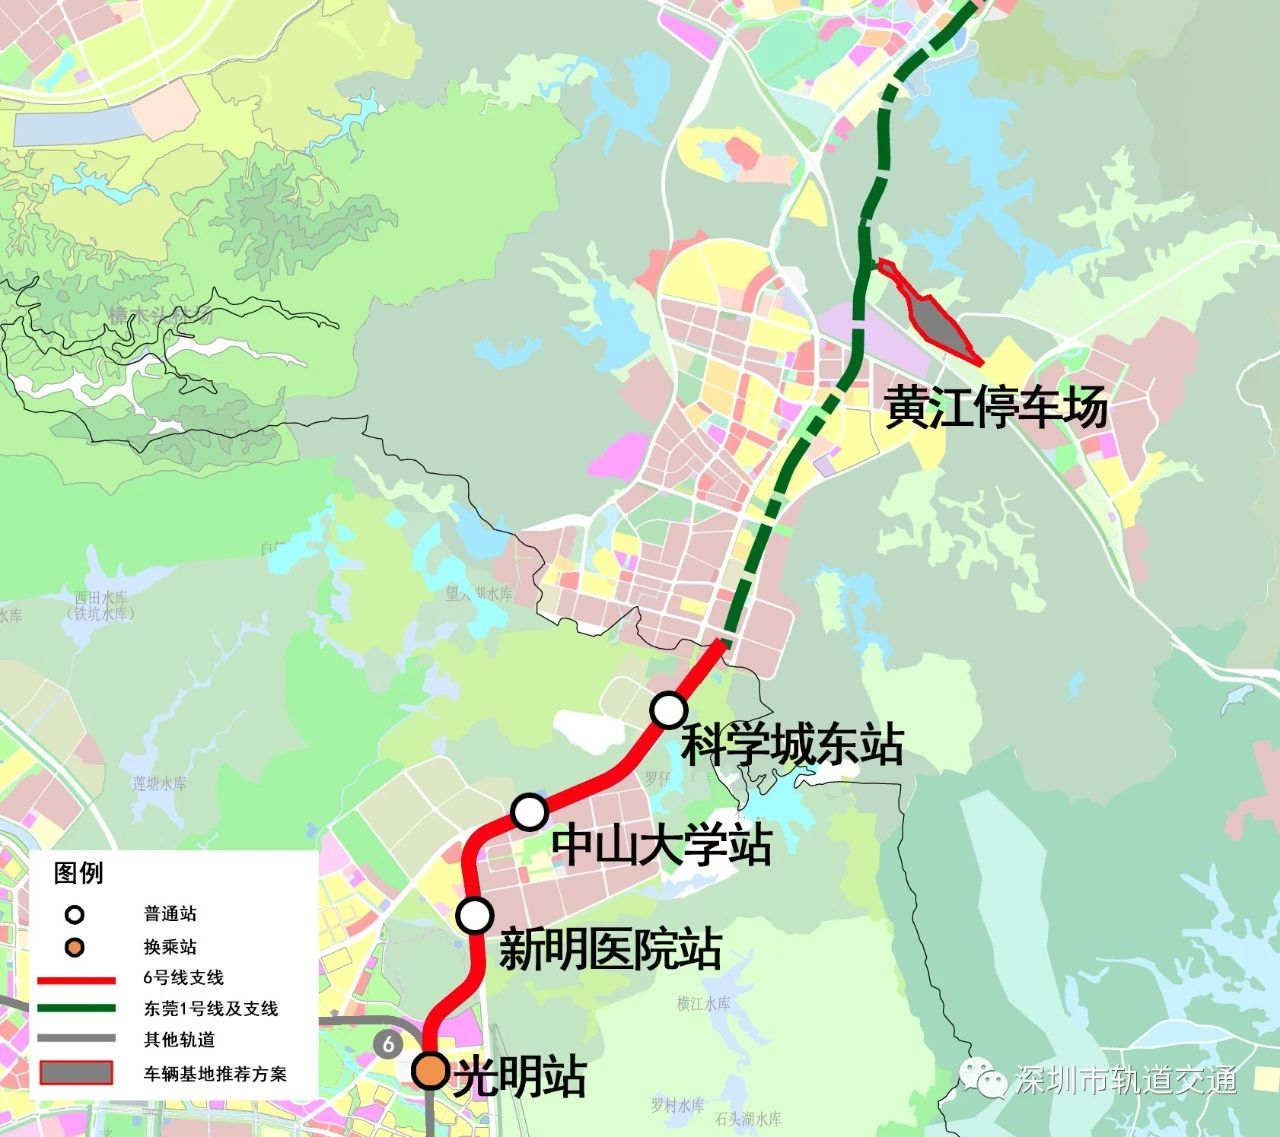 深圳地铁6号线支线正式铺轨 预计2022年通车